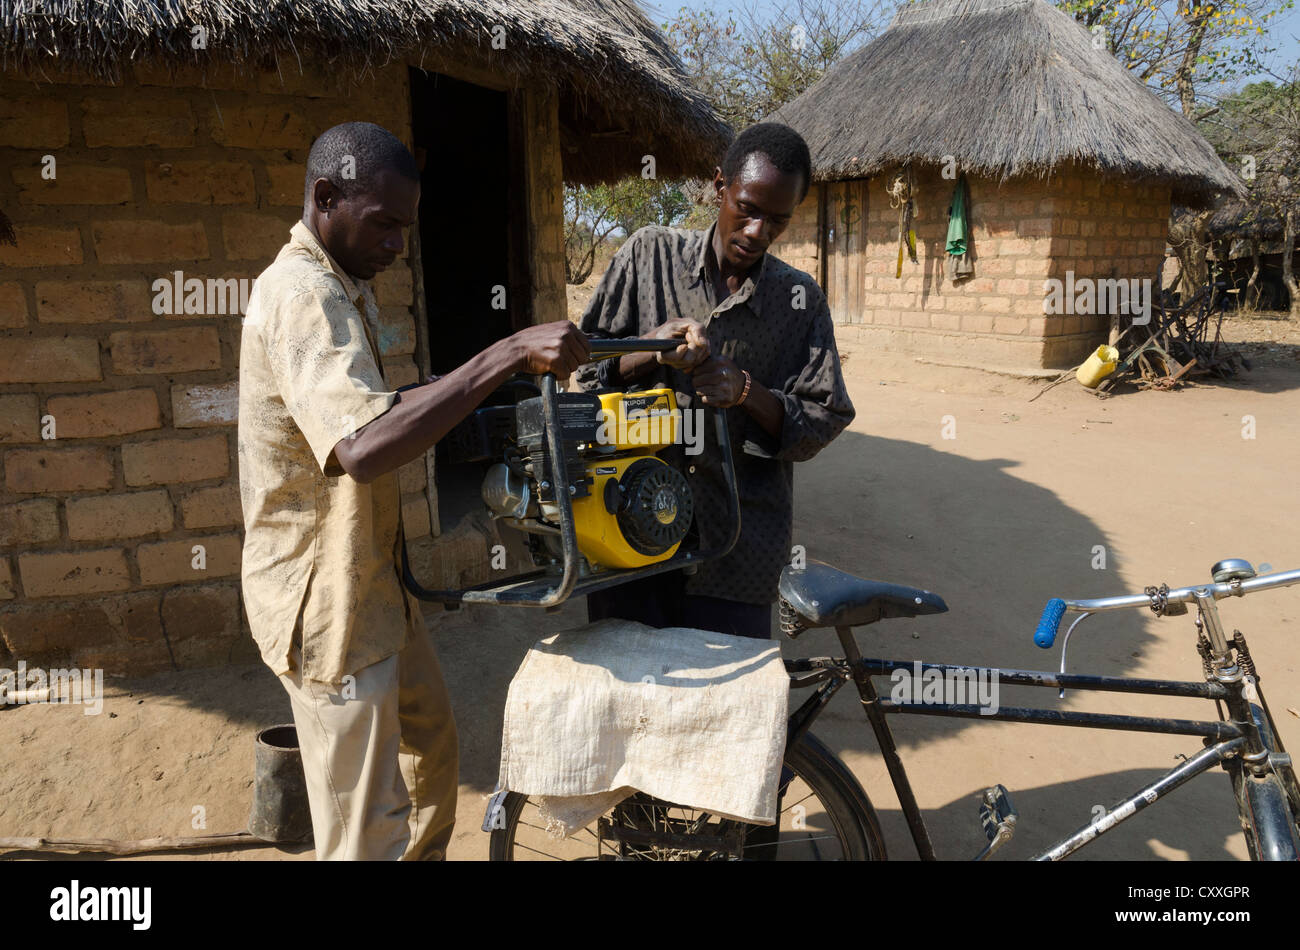 Wirtschaftender Landwirt seine kleine Bewässerung Pumpe auf seinem Fahrrad zu transportieren. Monze Bereich. Sambia. Stockfoto